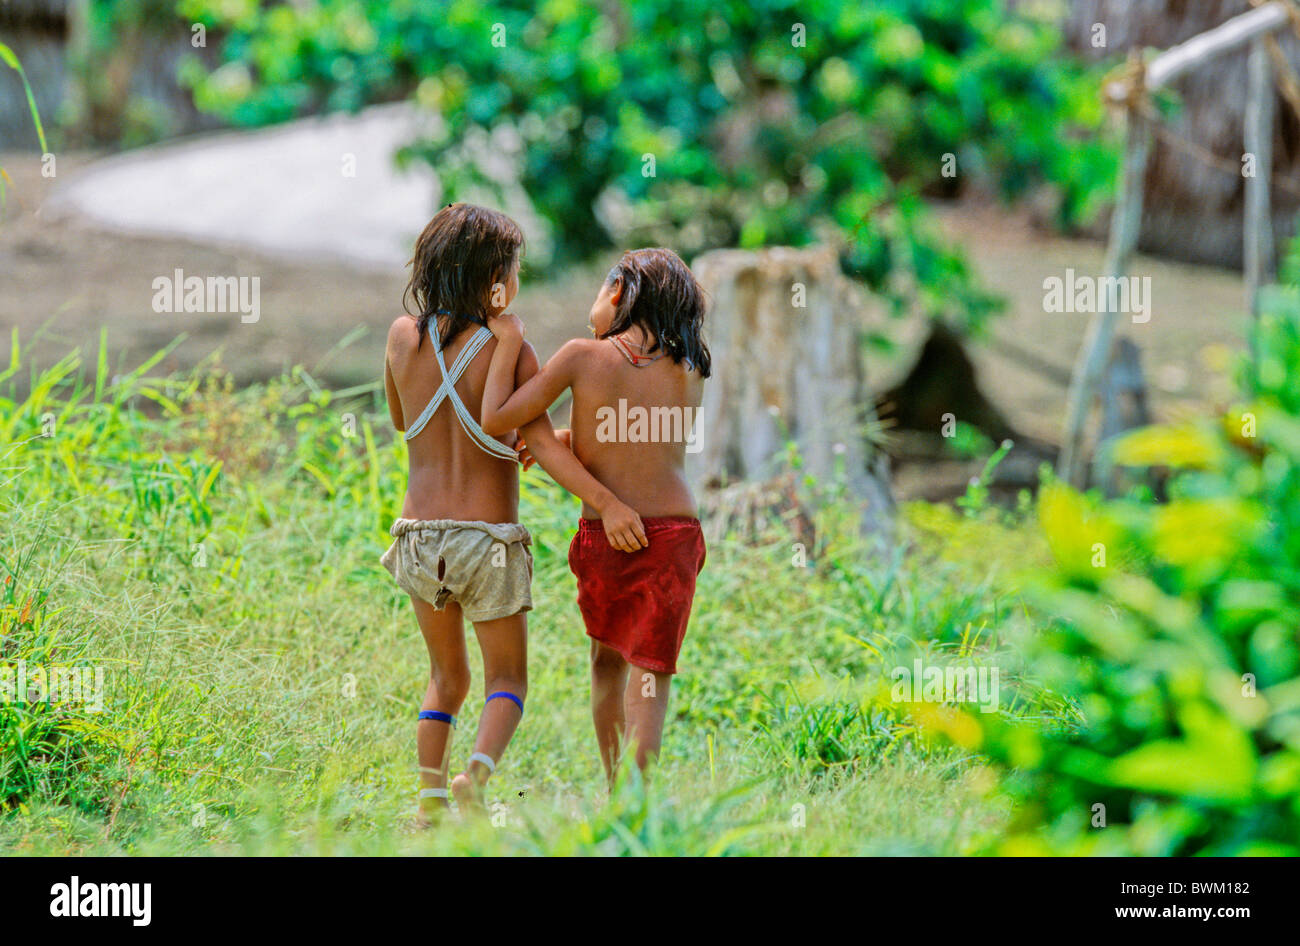 Venezuela Amérique du Sud Indios Tribu Yanomami Ironavi les populations autochtones Indiens autochtones indigènes deux filles Chil Banque D'Images